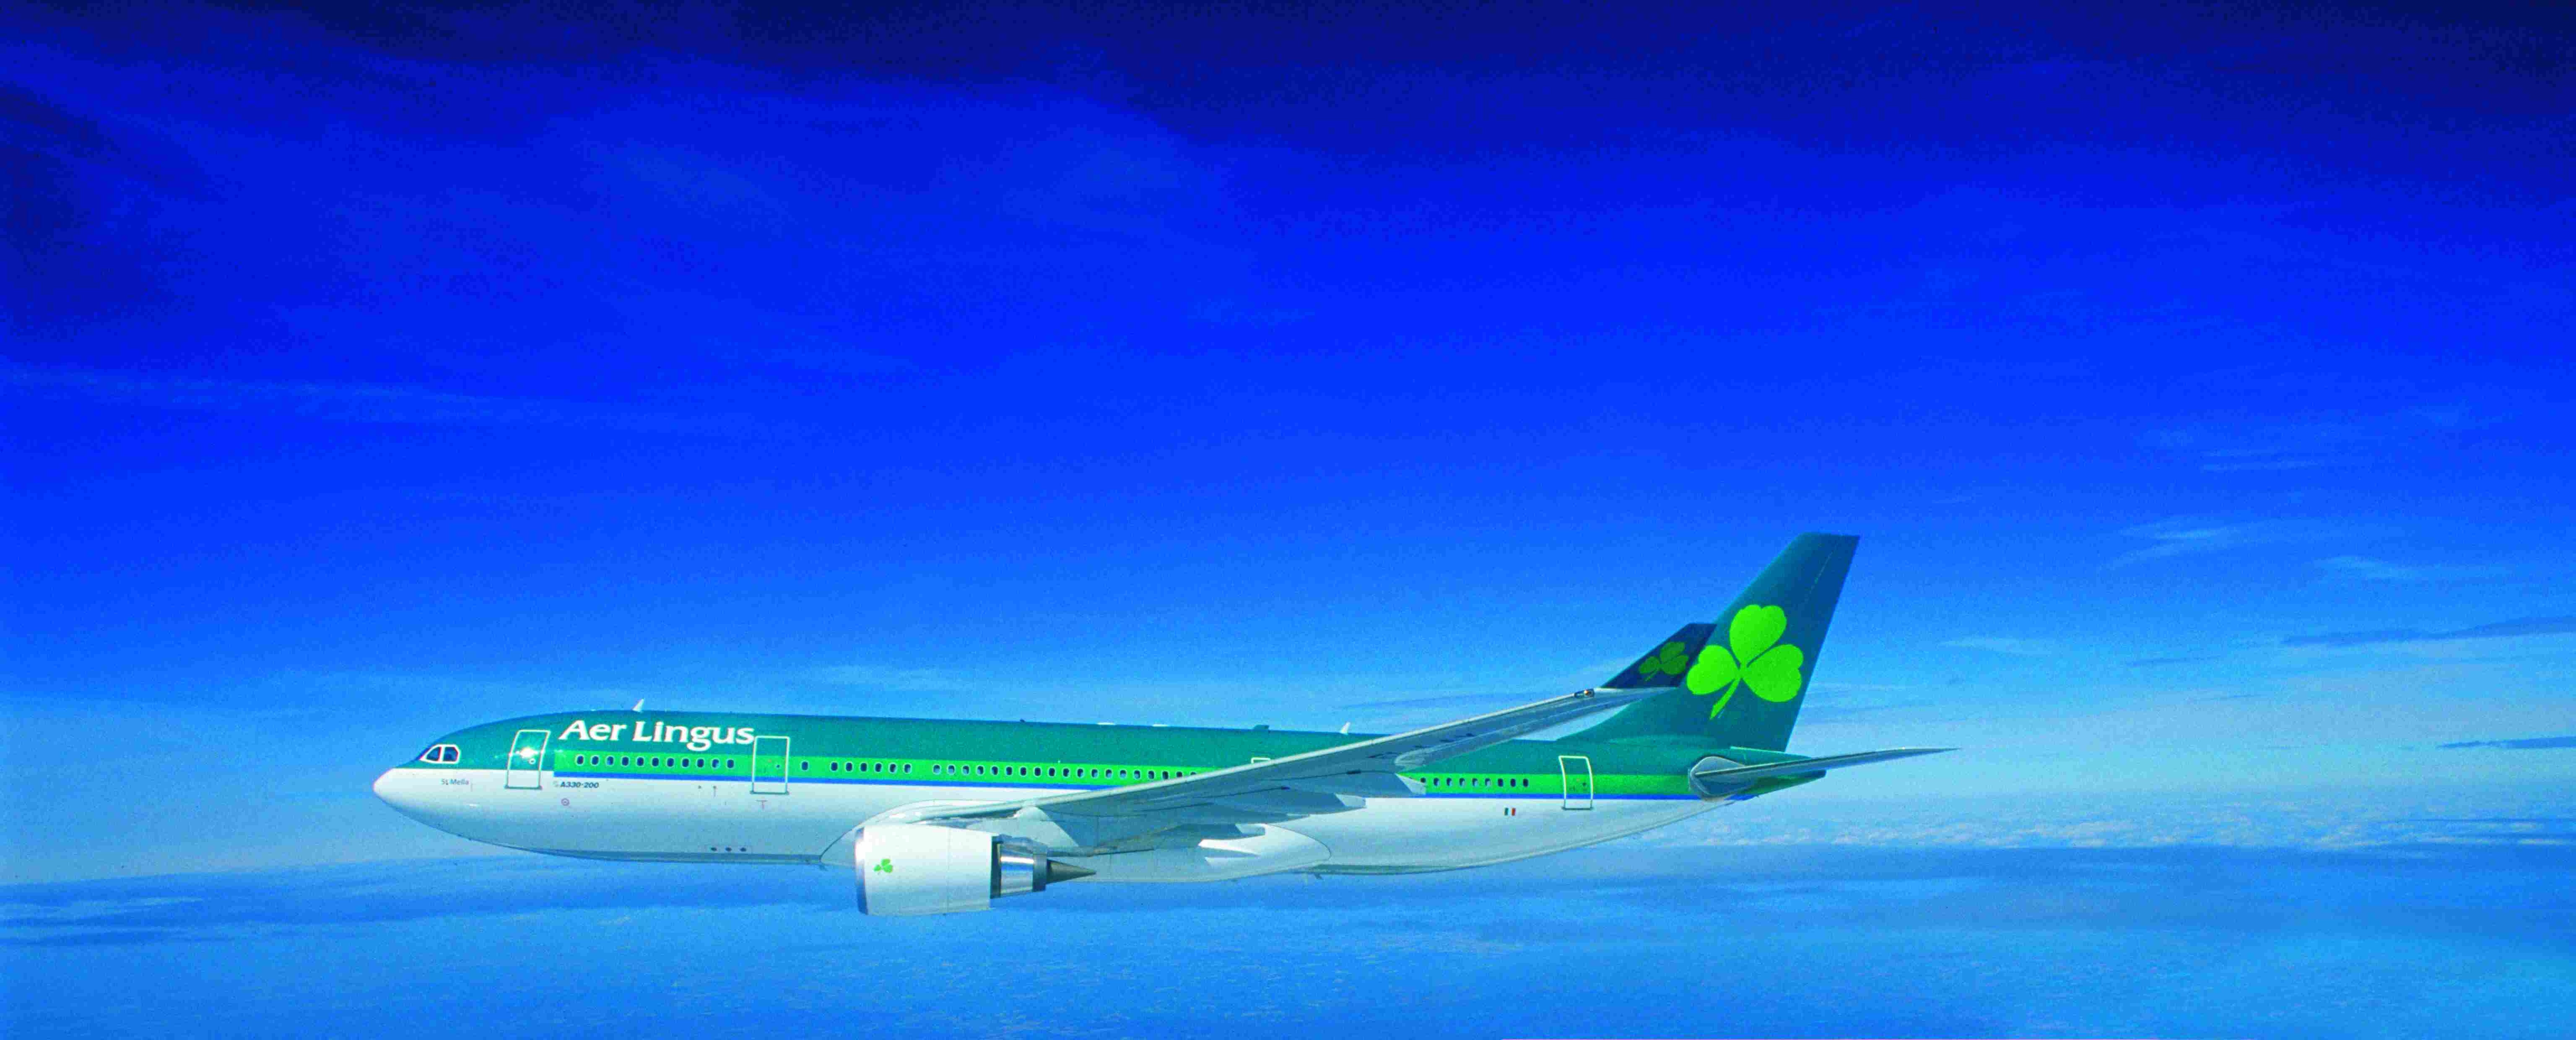 Les experts préconisent la vente des parts de l'Etat irlandais dans Aer Lingus